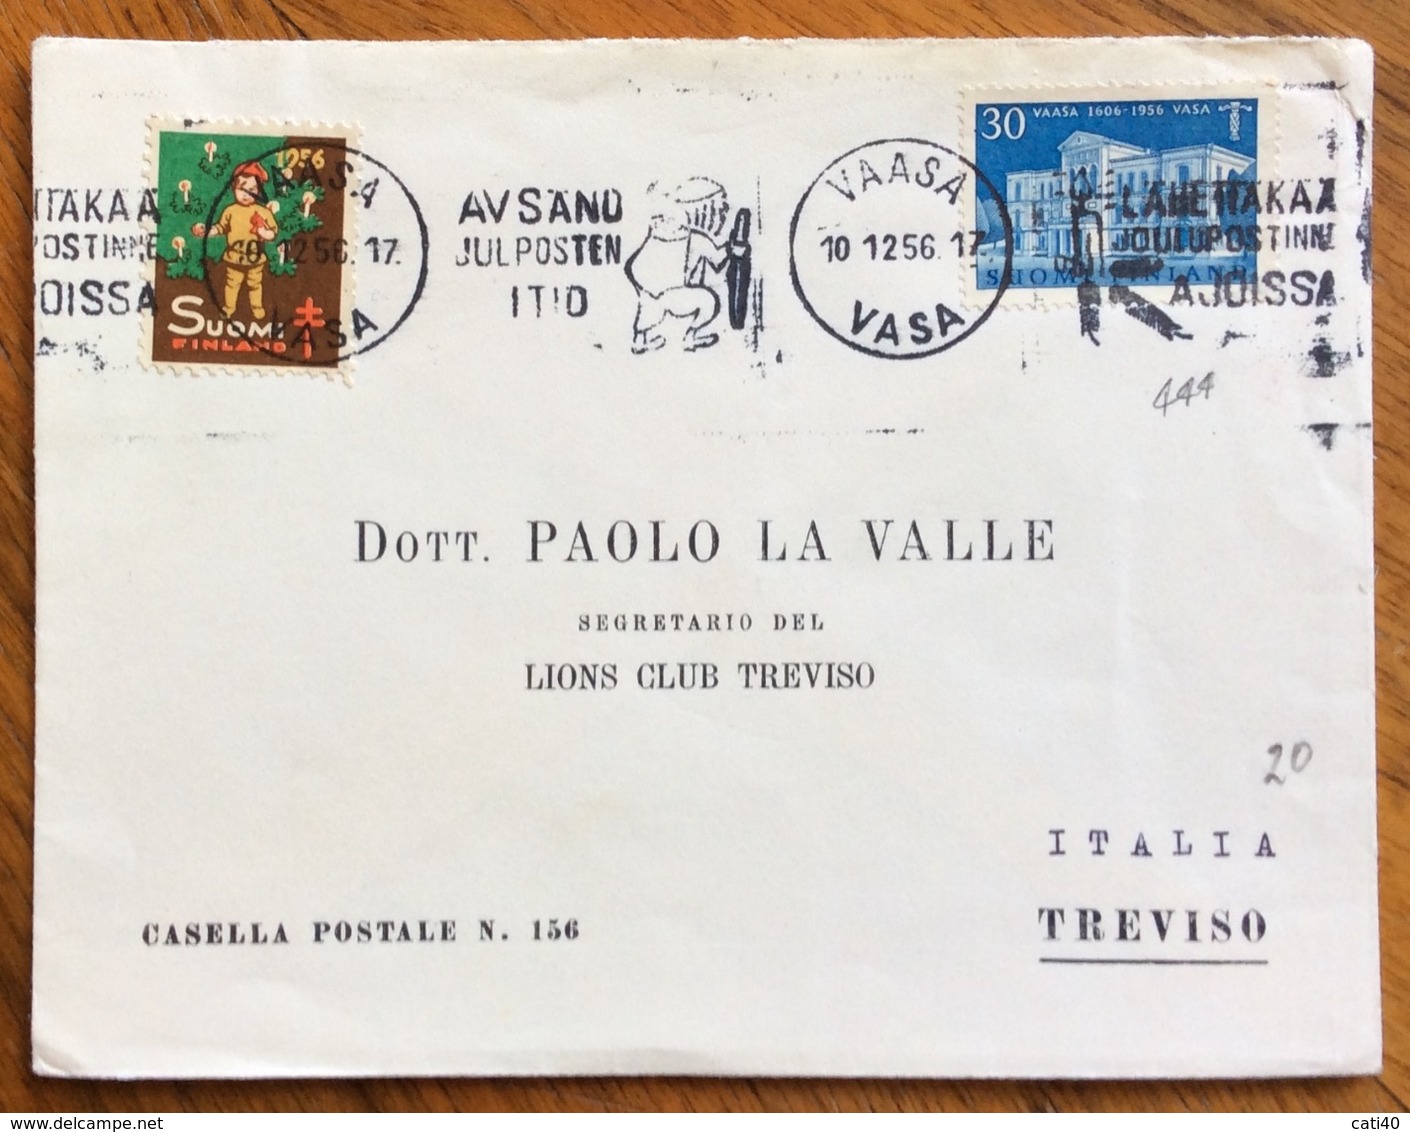 SUOMI FILLAND COVER ON VAASA  FROM TREVISO  ITALY  THE 10/12/56 - Non Classificati